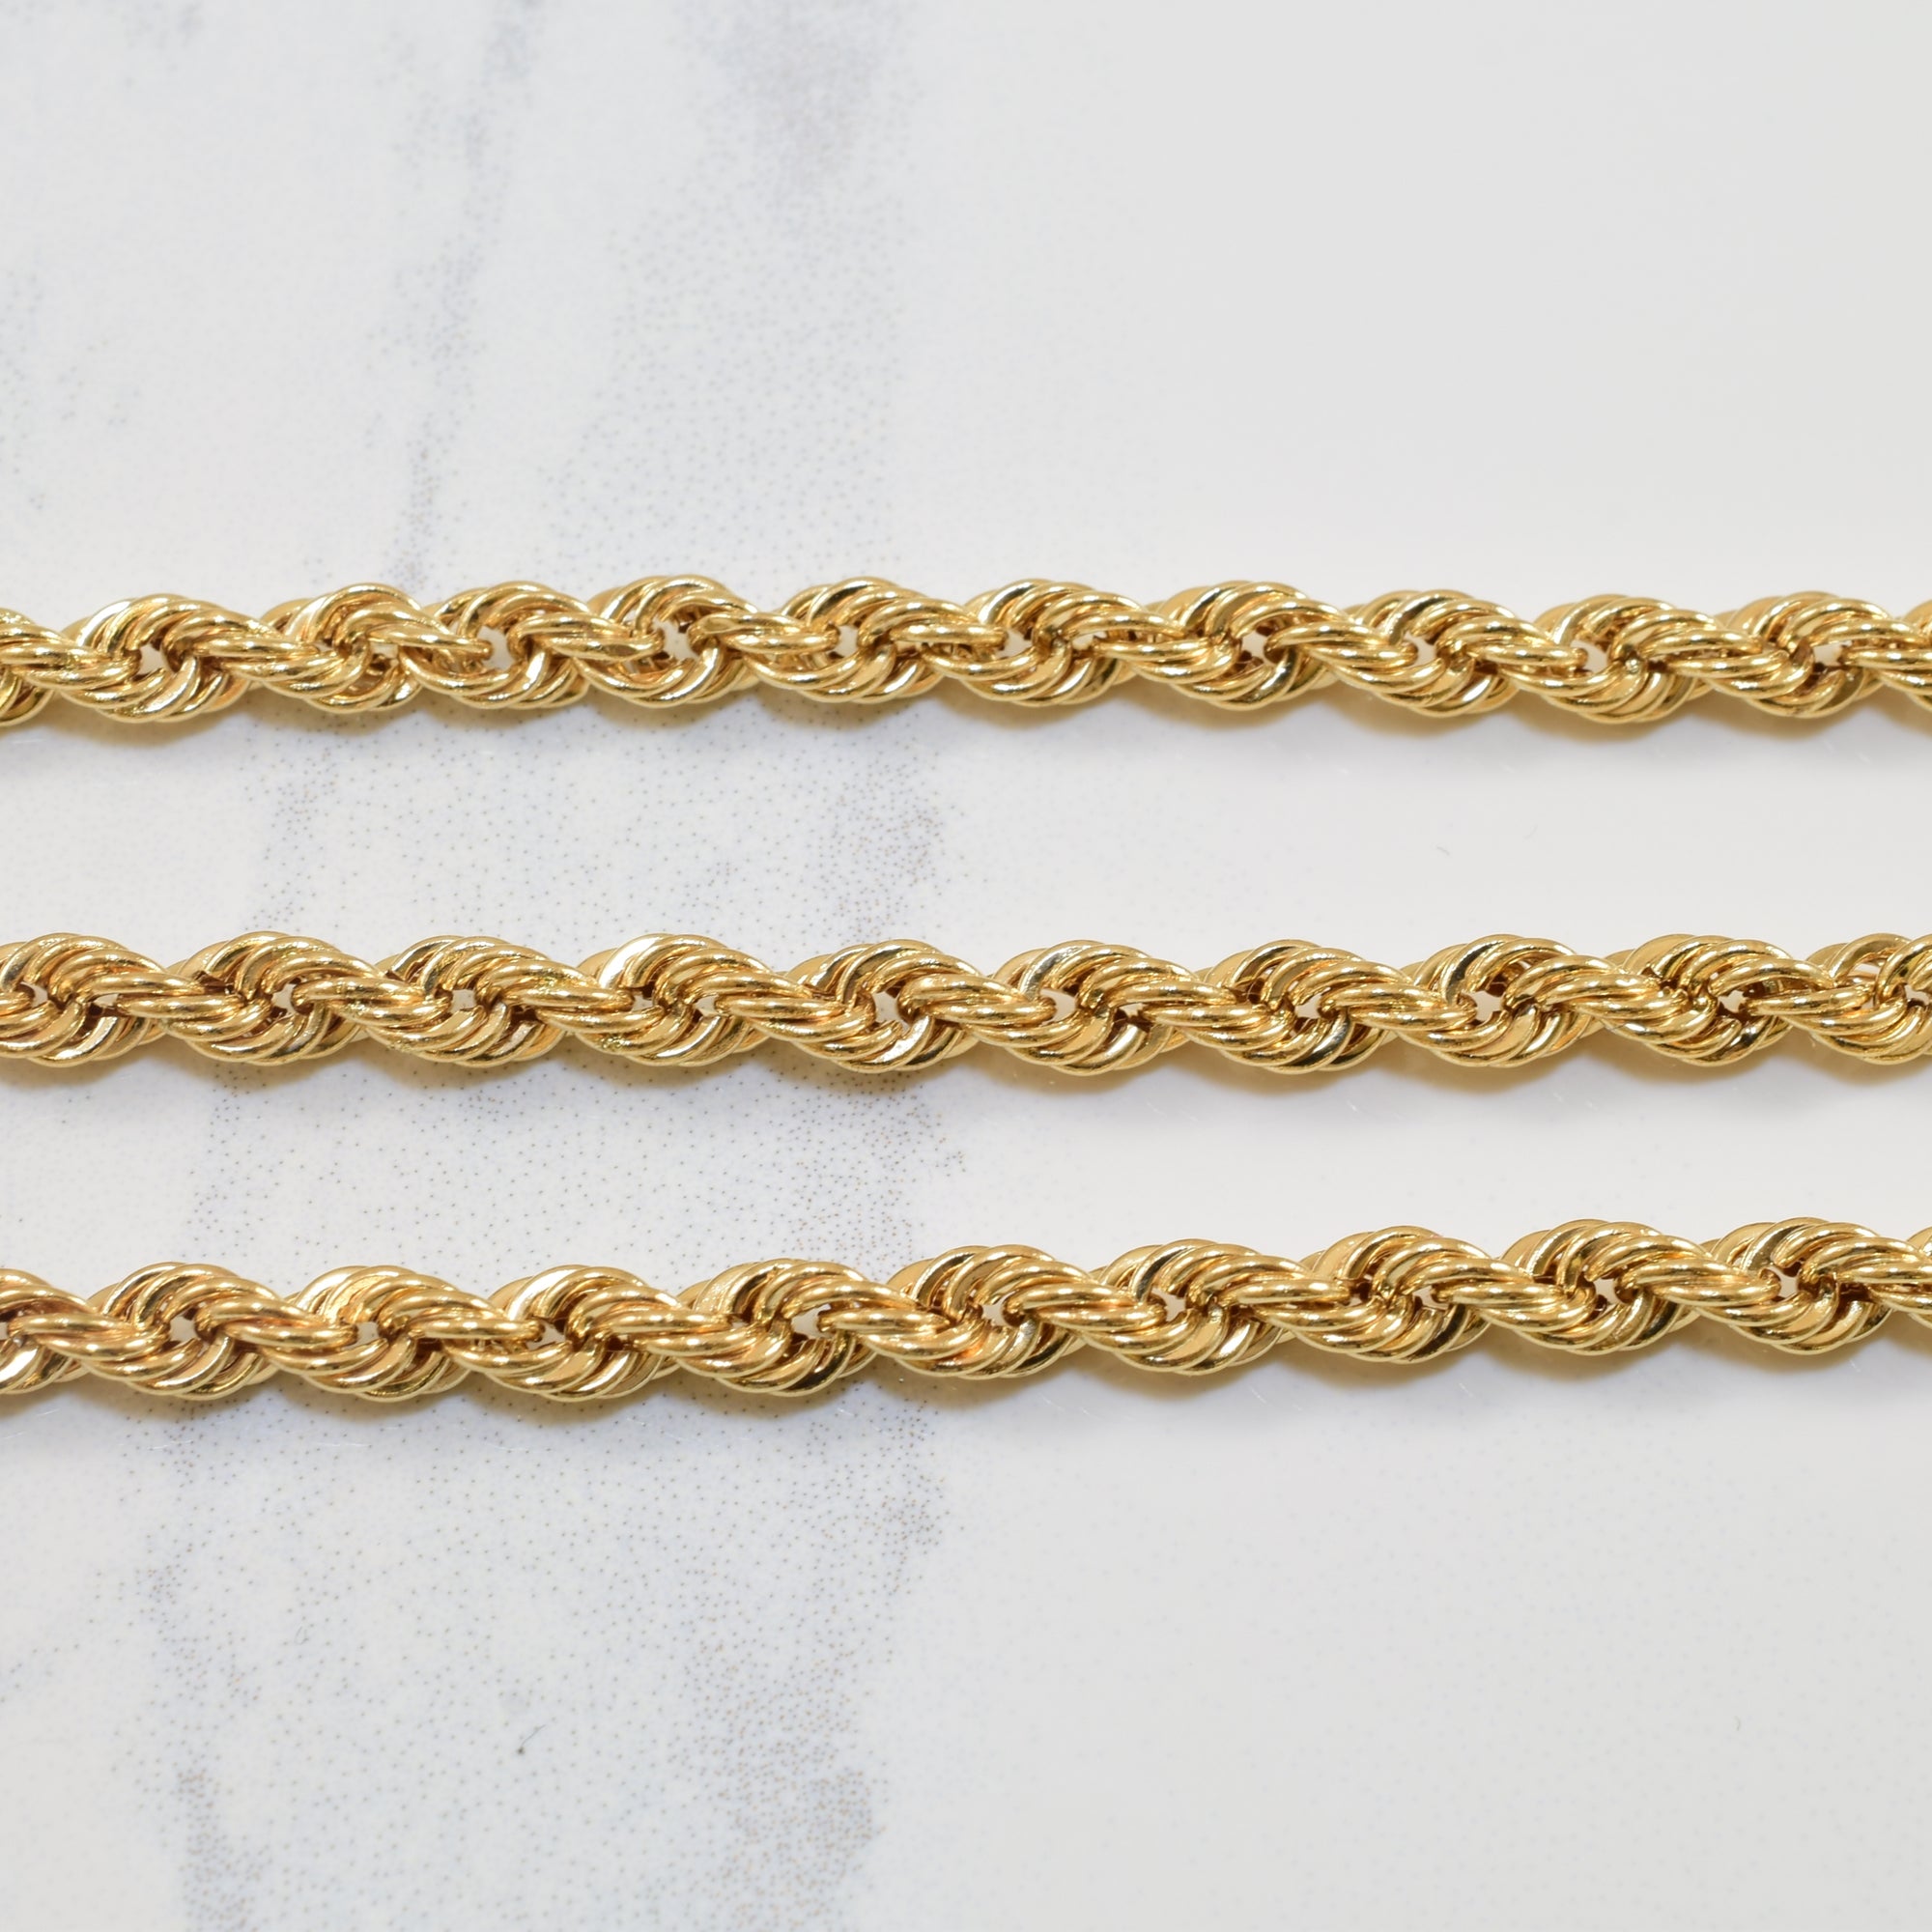 10k Yellow Gold Rope Chain | 23